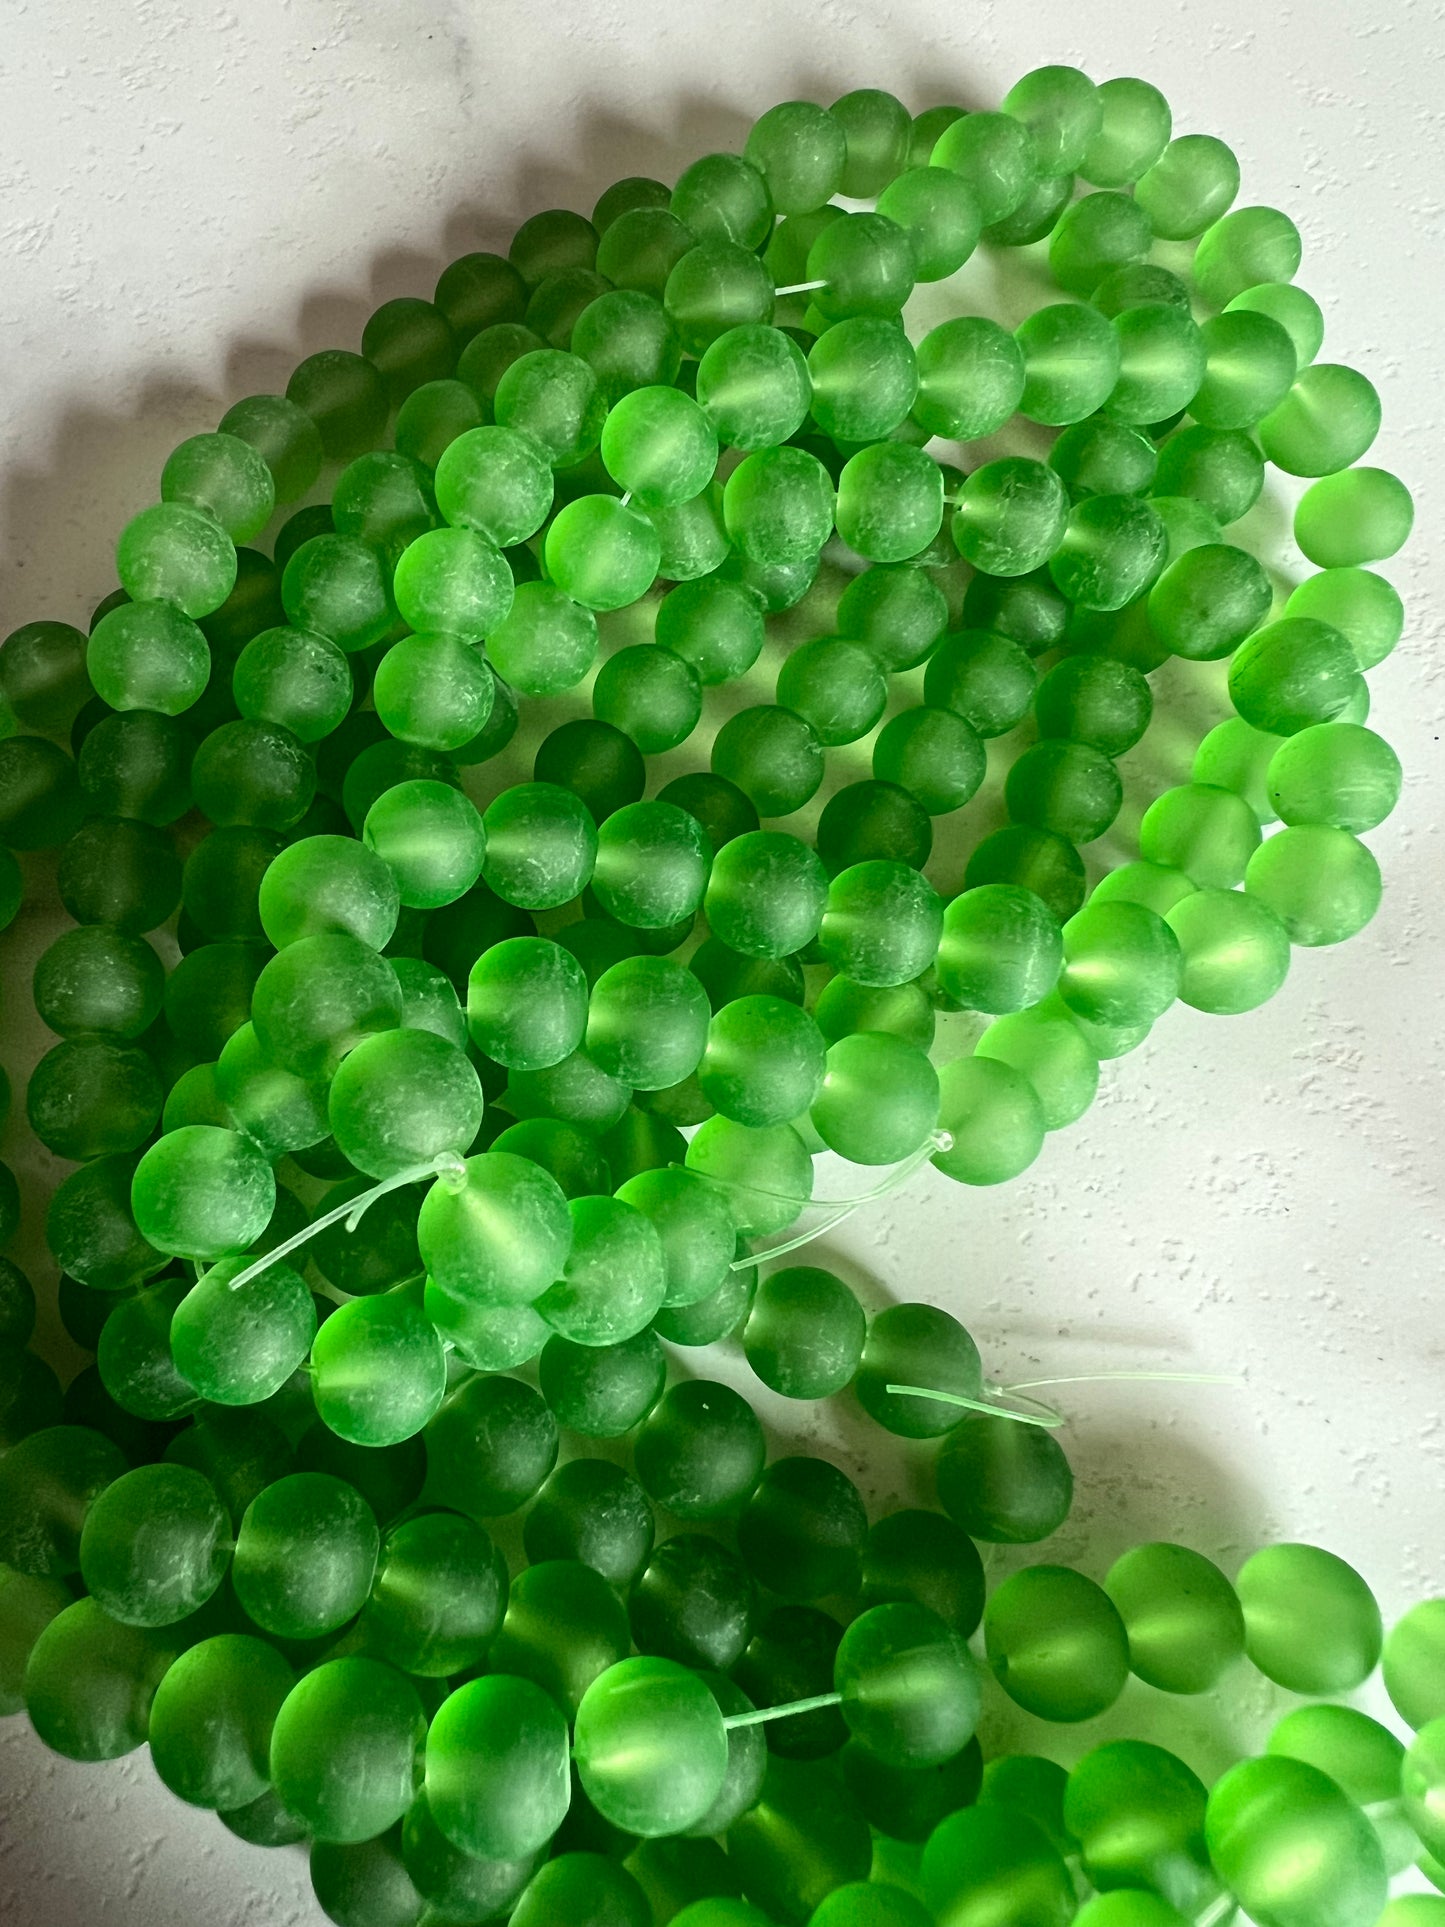 Matte Finish Glass Beads (10mm)